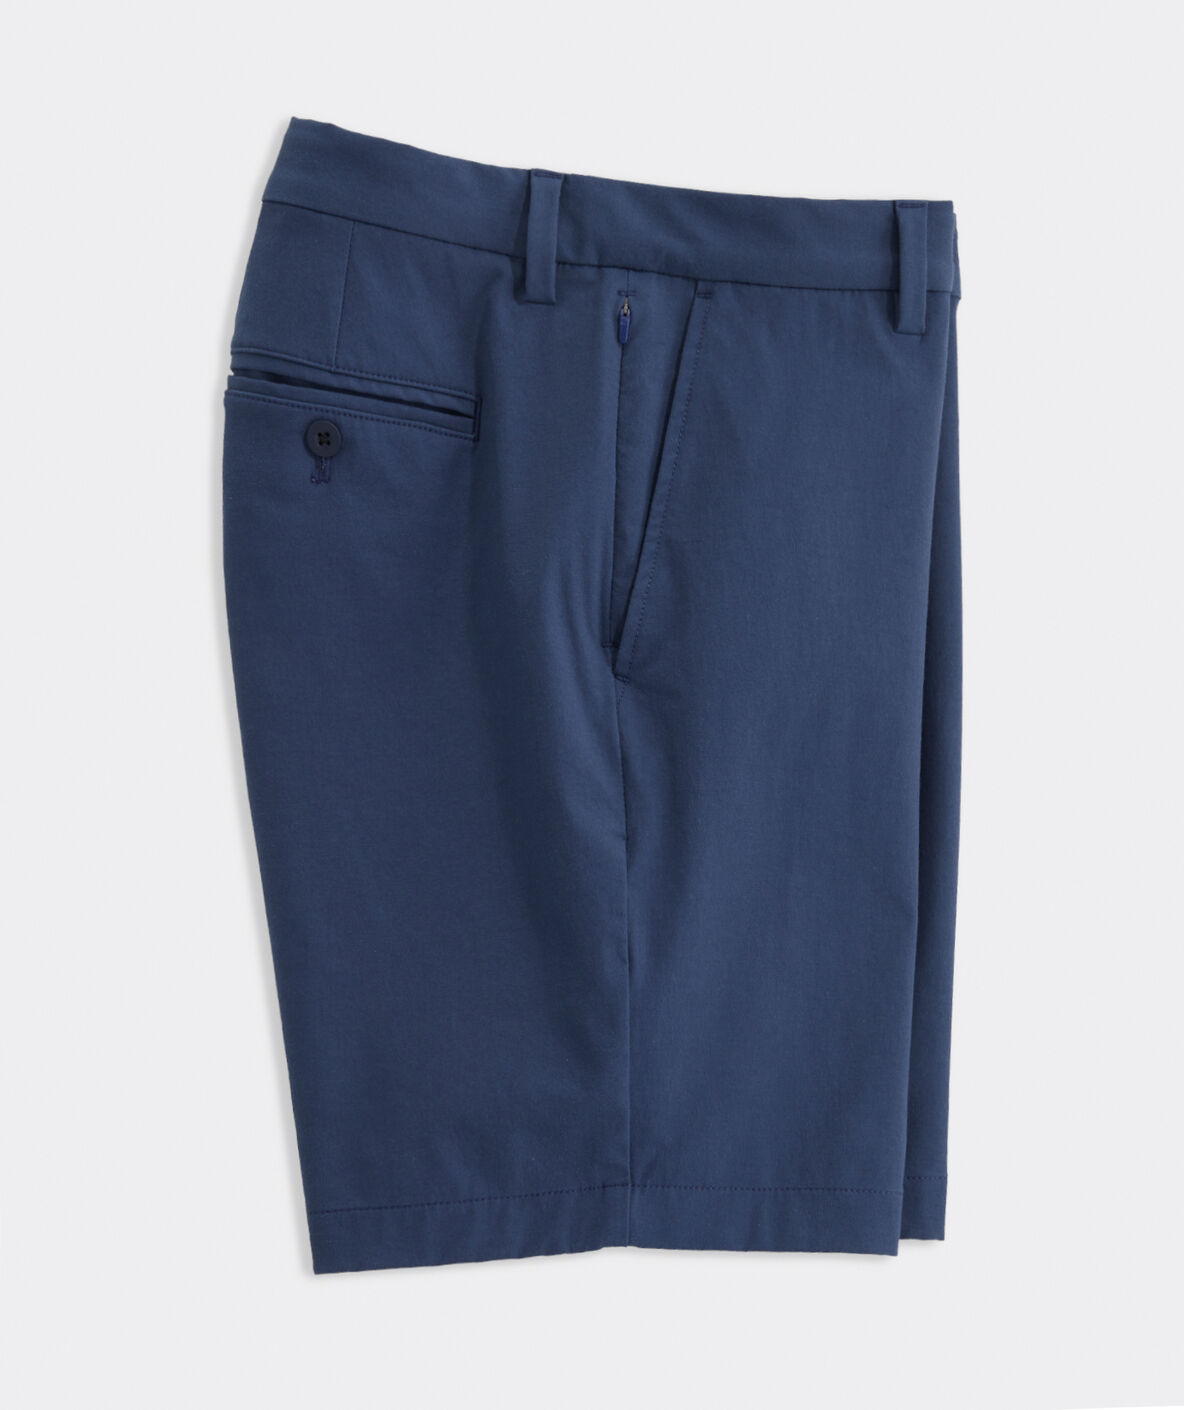 Vineyard Vines 9" OTG Shorts - Blue Blazer